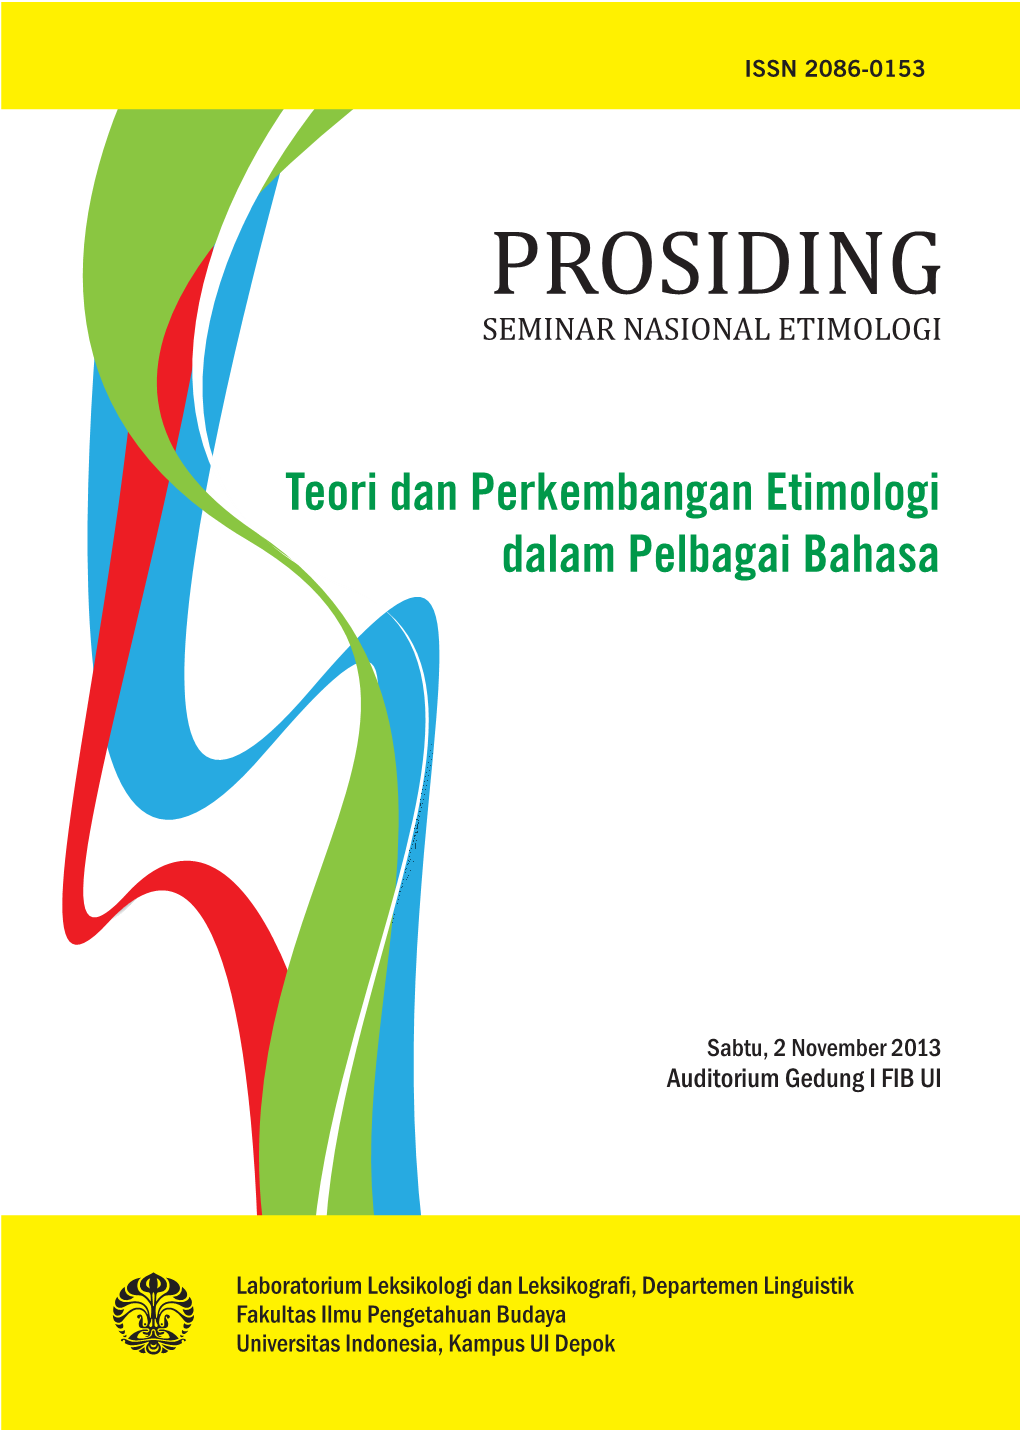 Prosiding Seminar Nasional Etimologi 2013